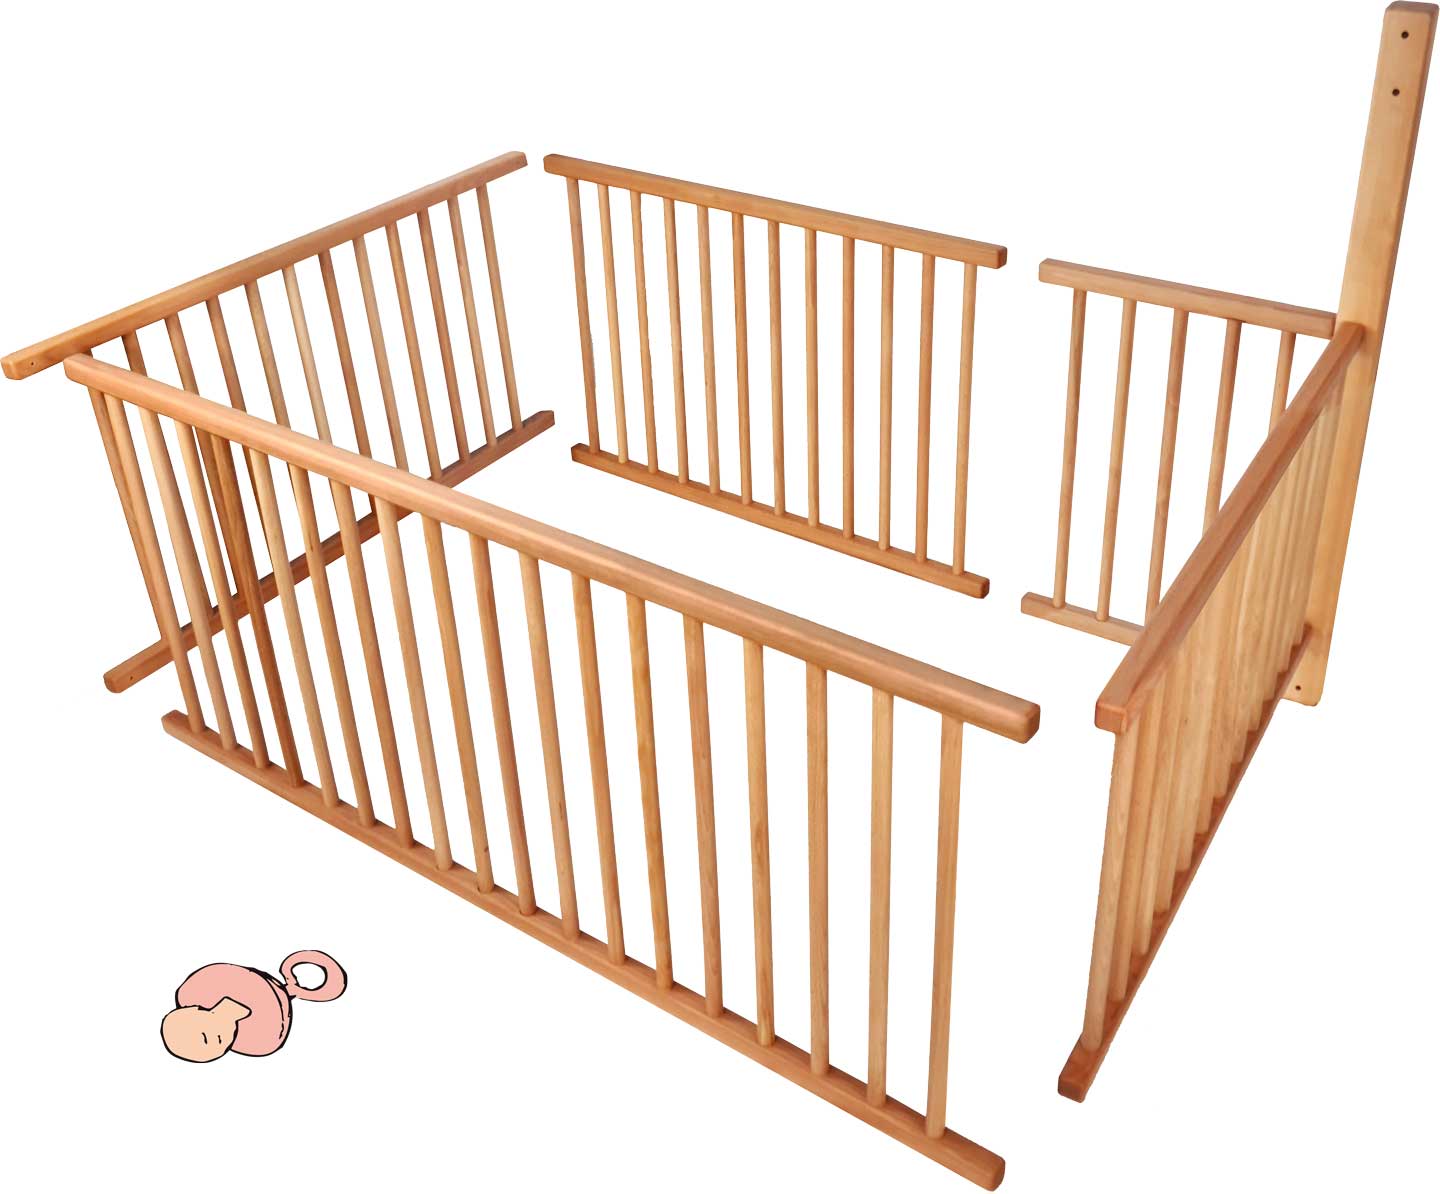 Standart ayaklı (196 cm) ranzalı yatak için bebek ızgarası seti ve ek olarak gerekli kiriş dahil olmak üzere yatış yüzeyinin 3/4'ü için merdiven pozisyonu A**